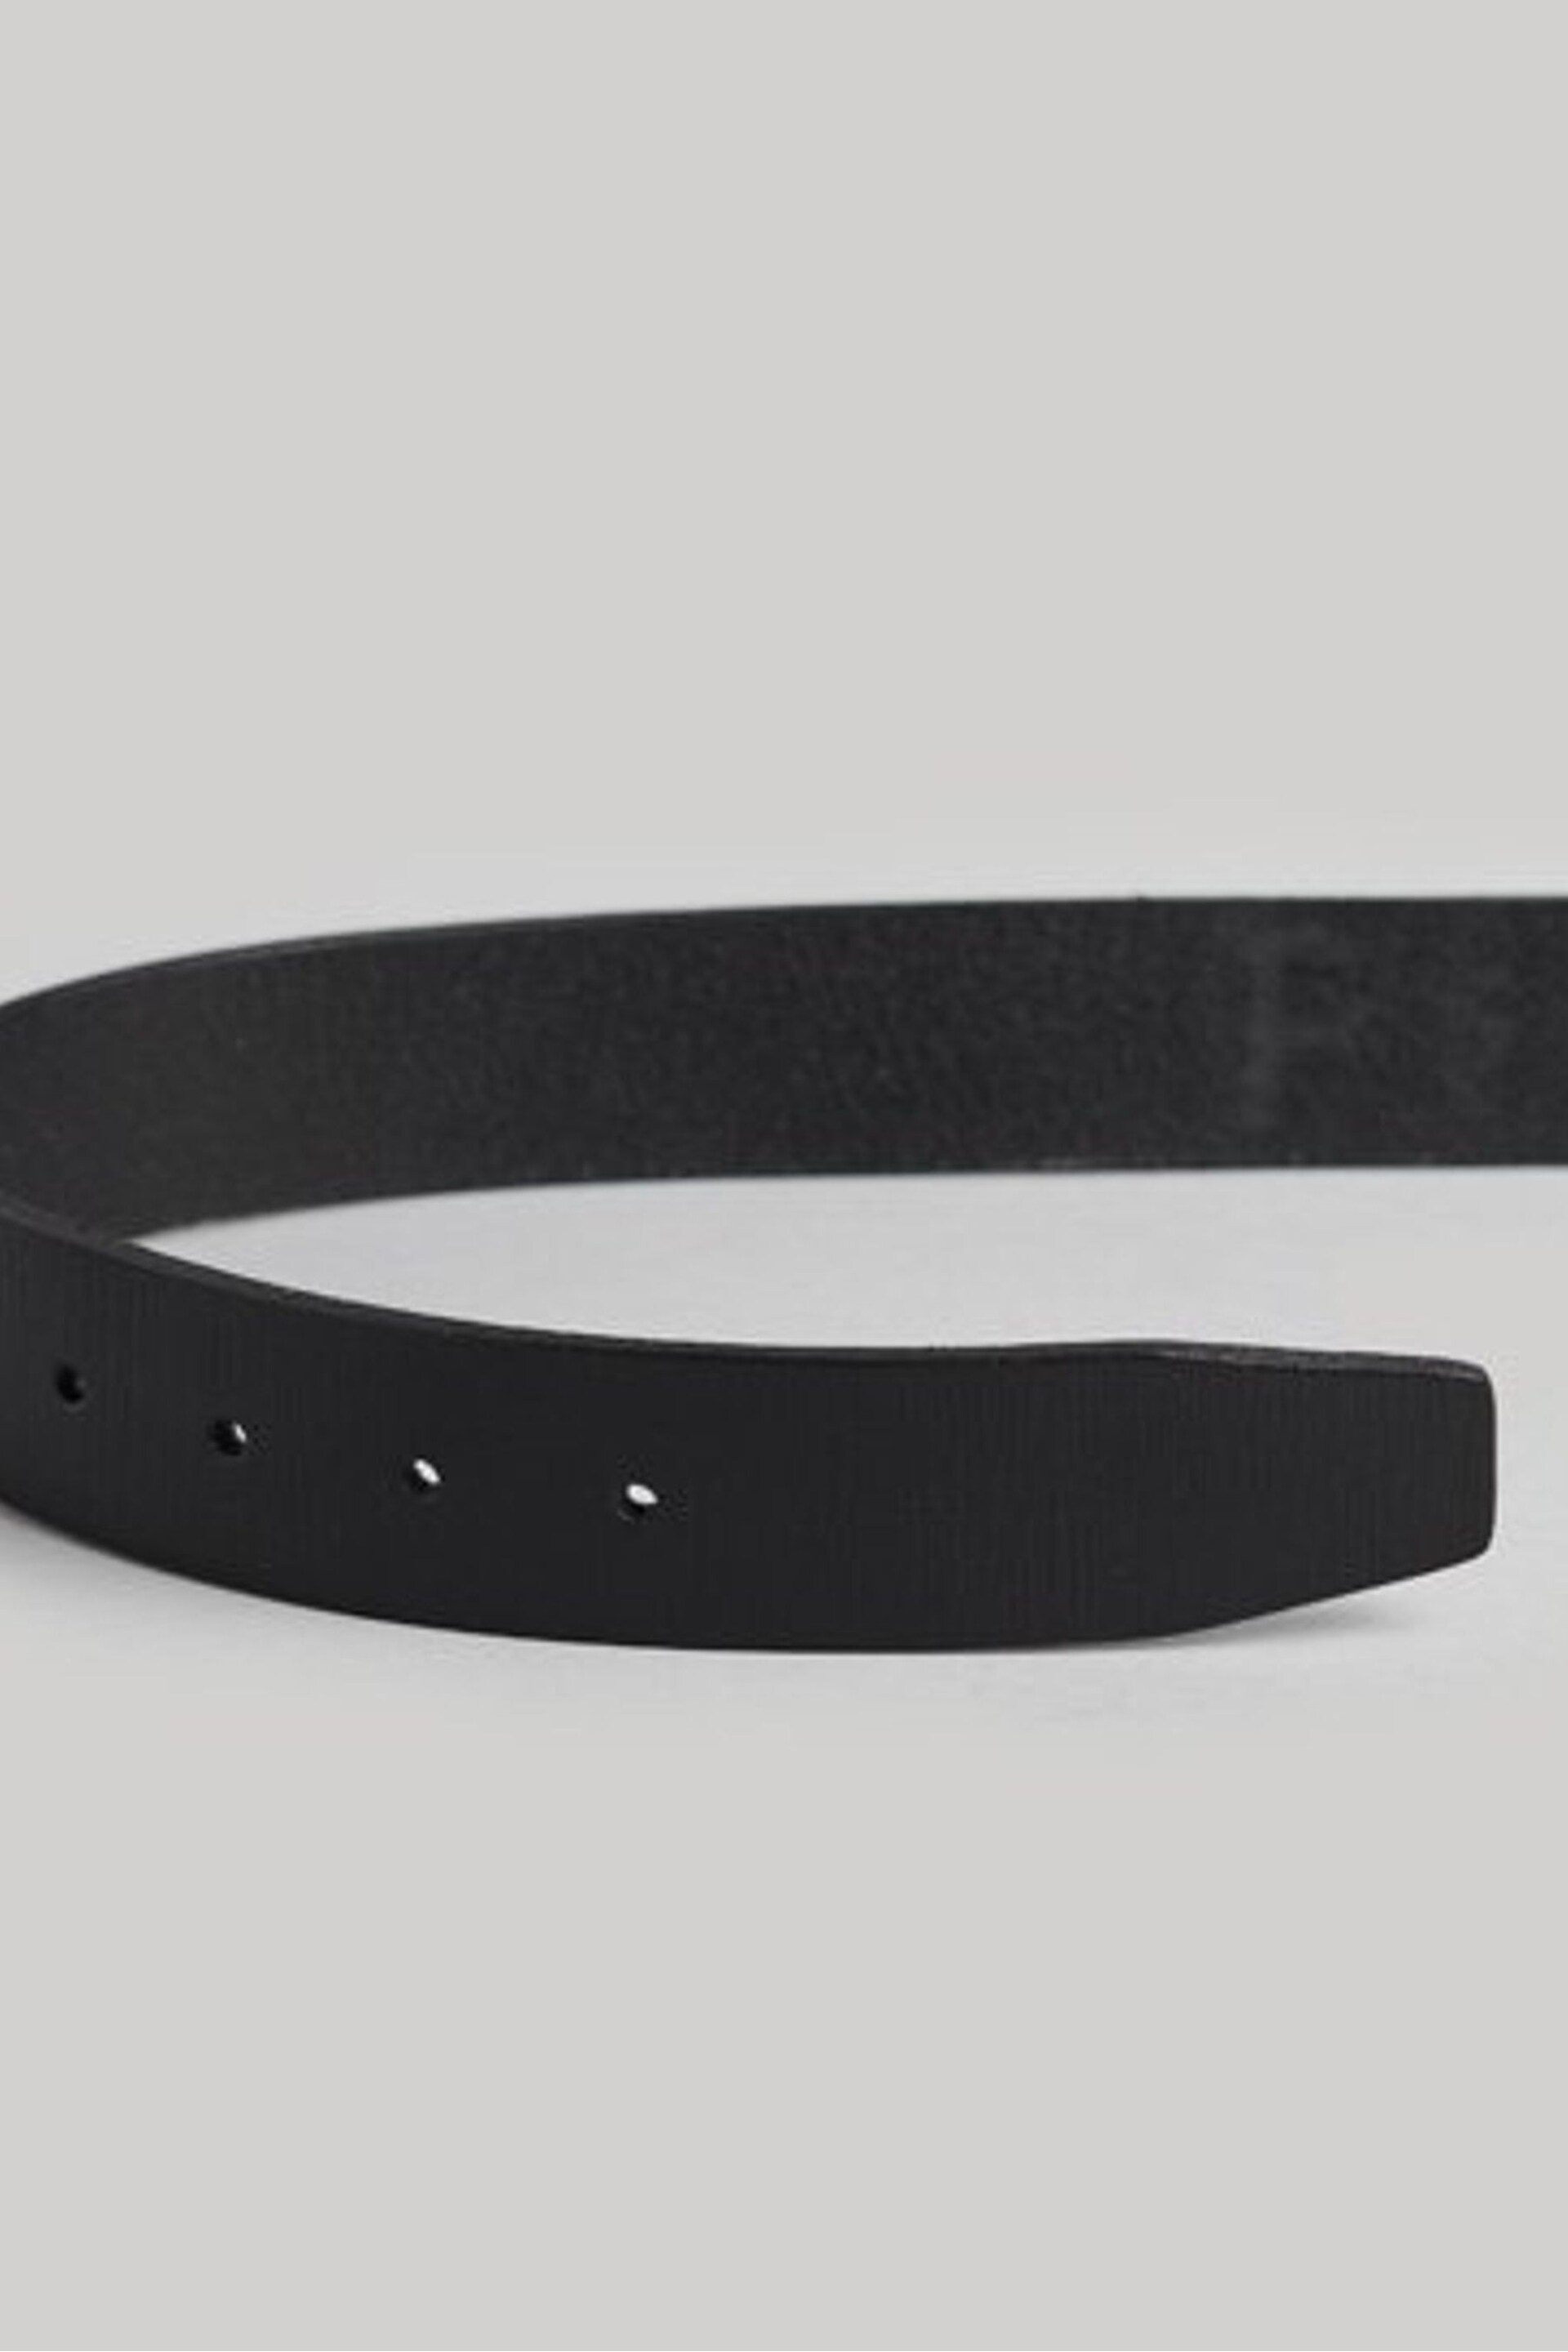 Superdry Black Vintage Branded Belt - Image 4 of 4